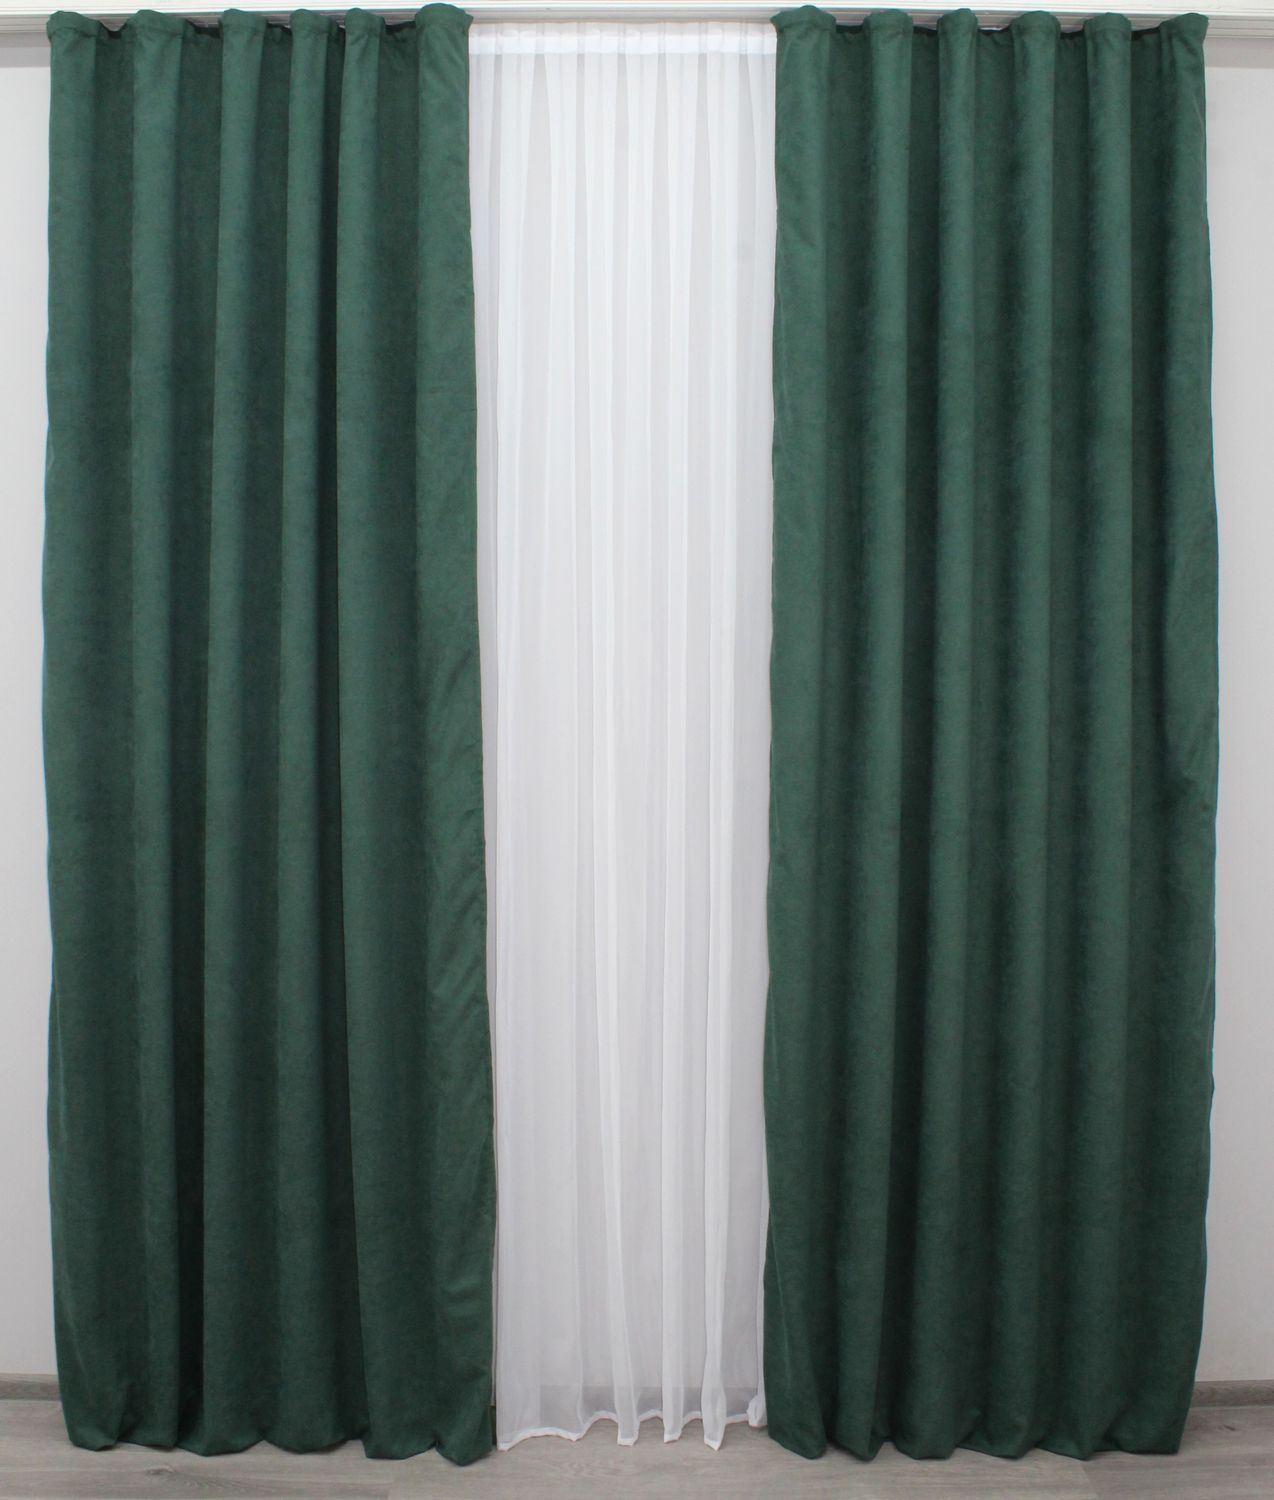 Комплект штор из ткани микровелюр SPARTA цвет зелёный 971ш, Зелёный, Комплект штор (2шт. 1,5х2,85м.), Классические, Без ламбрекена, Длинные, 1,5 м., 2,85 м., 150, 285, 2 - 3 м., В комплекте 2 шт., Тесьма